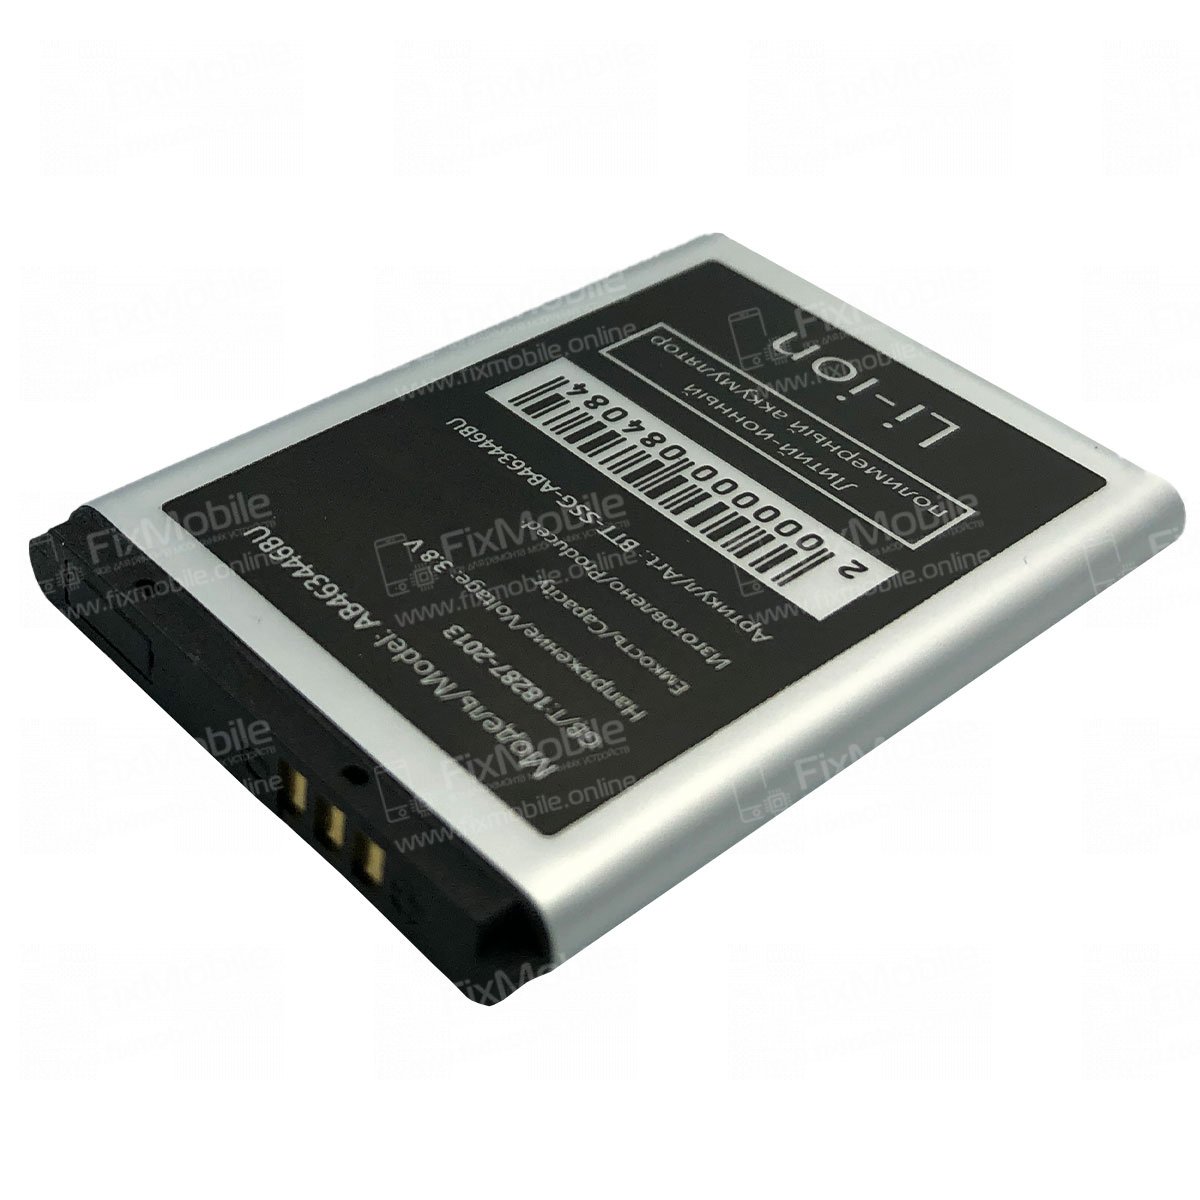 Оригинальный аккумулятор для Samsung Galaxy Ace 2 i | Купить батарею Самсунг Галакси Эйс 2